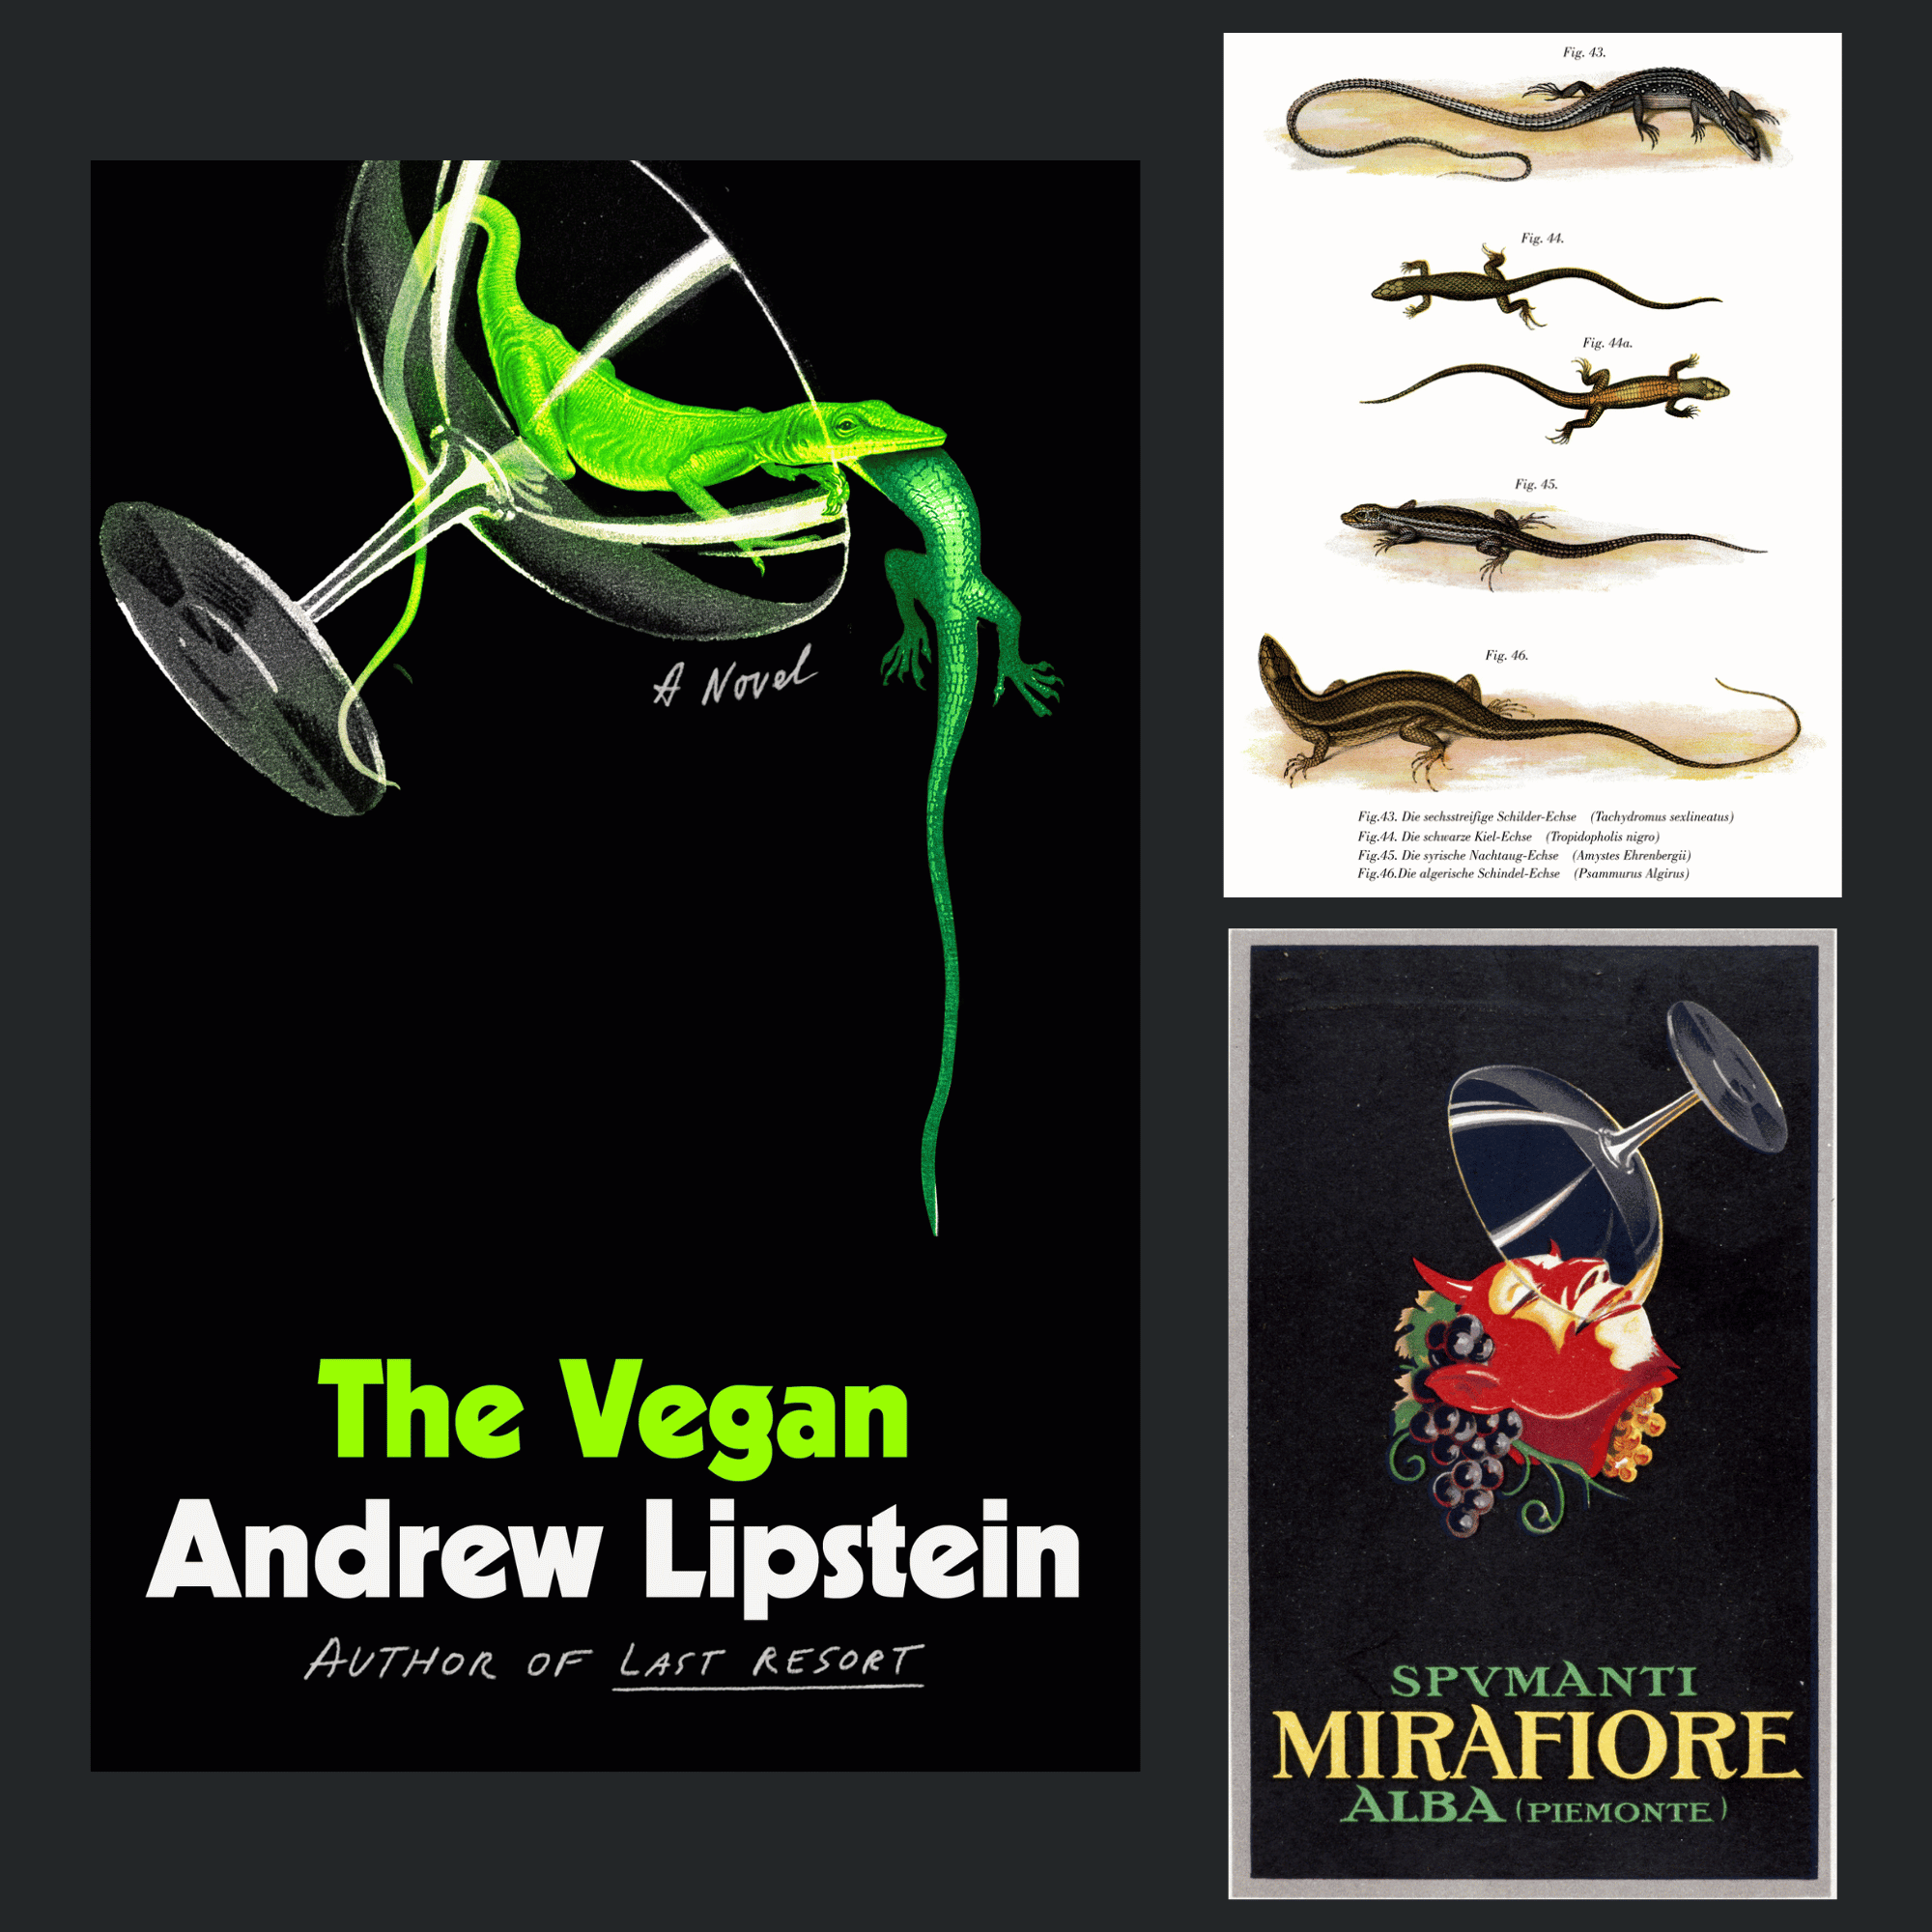 Buchcover von "The Vegan" inklusive der Bilder, die für das Cover verwendet wurden